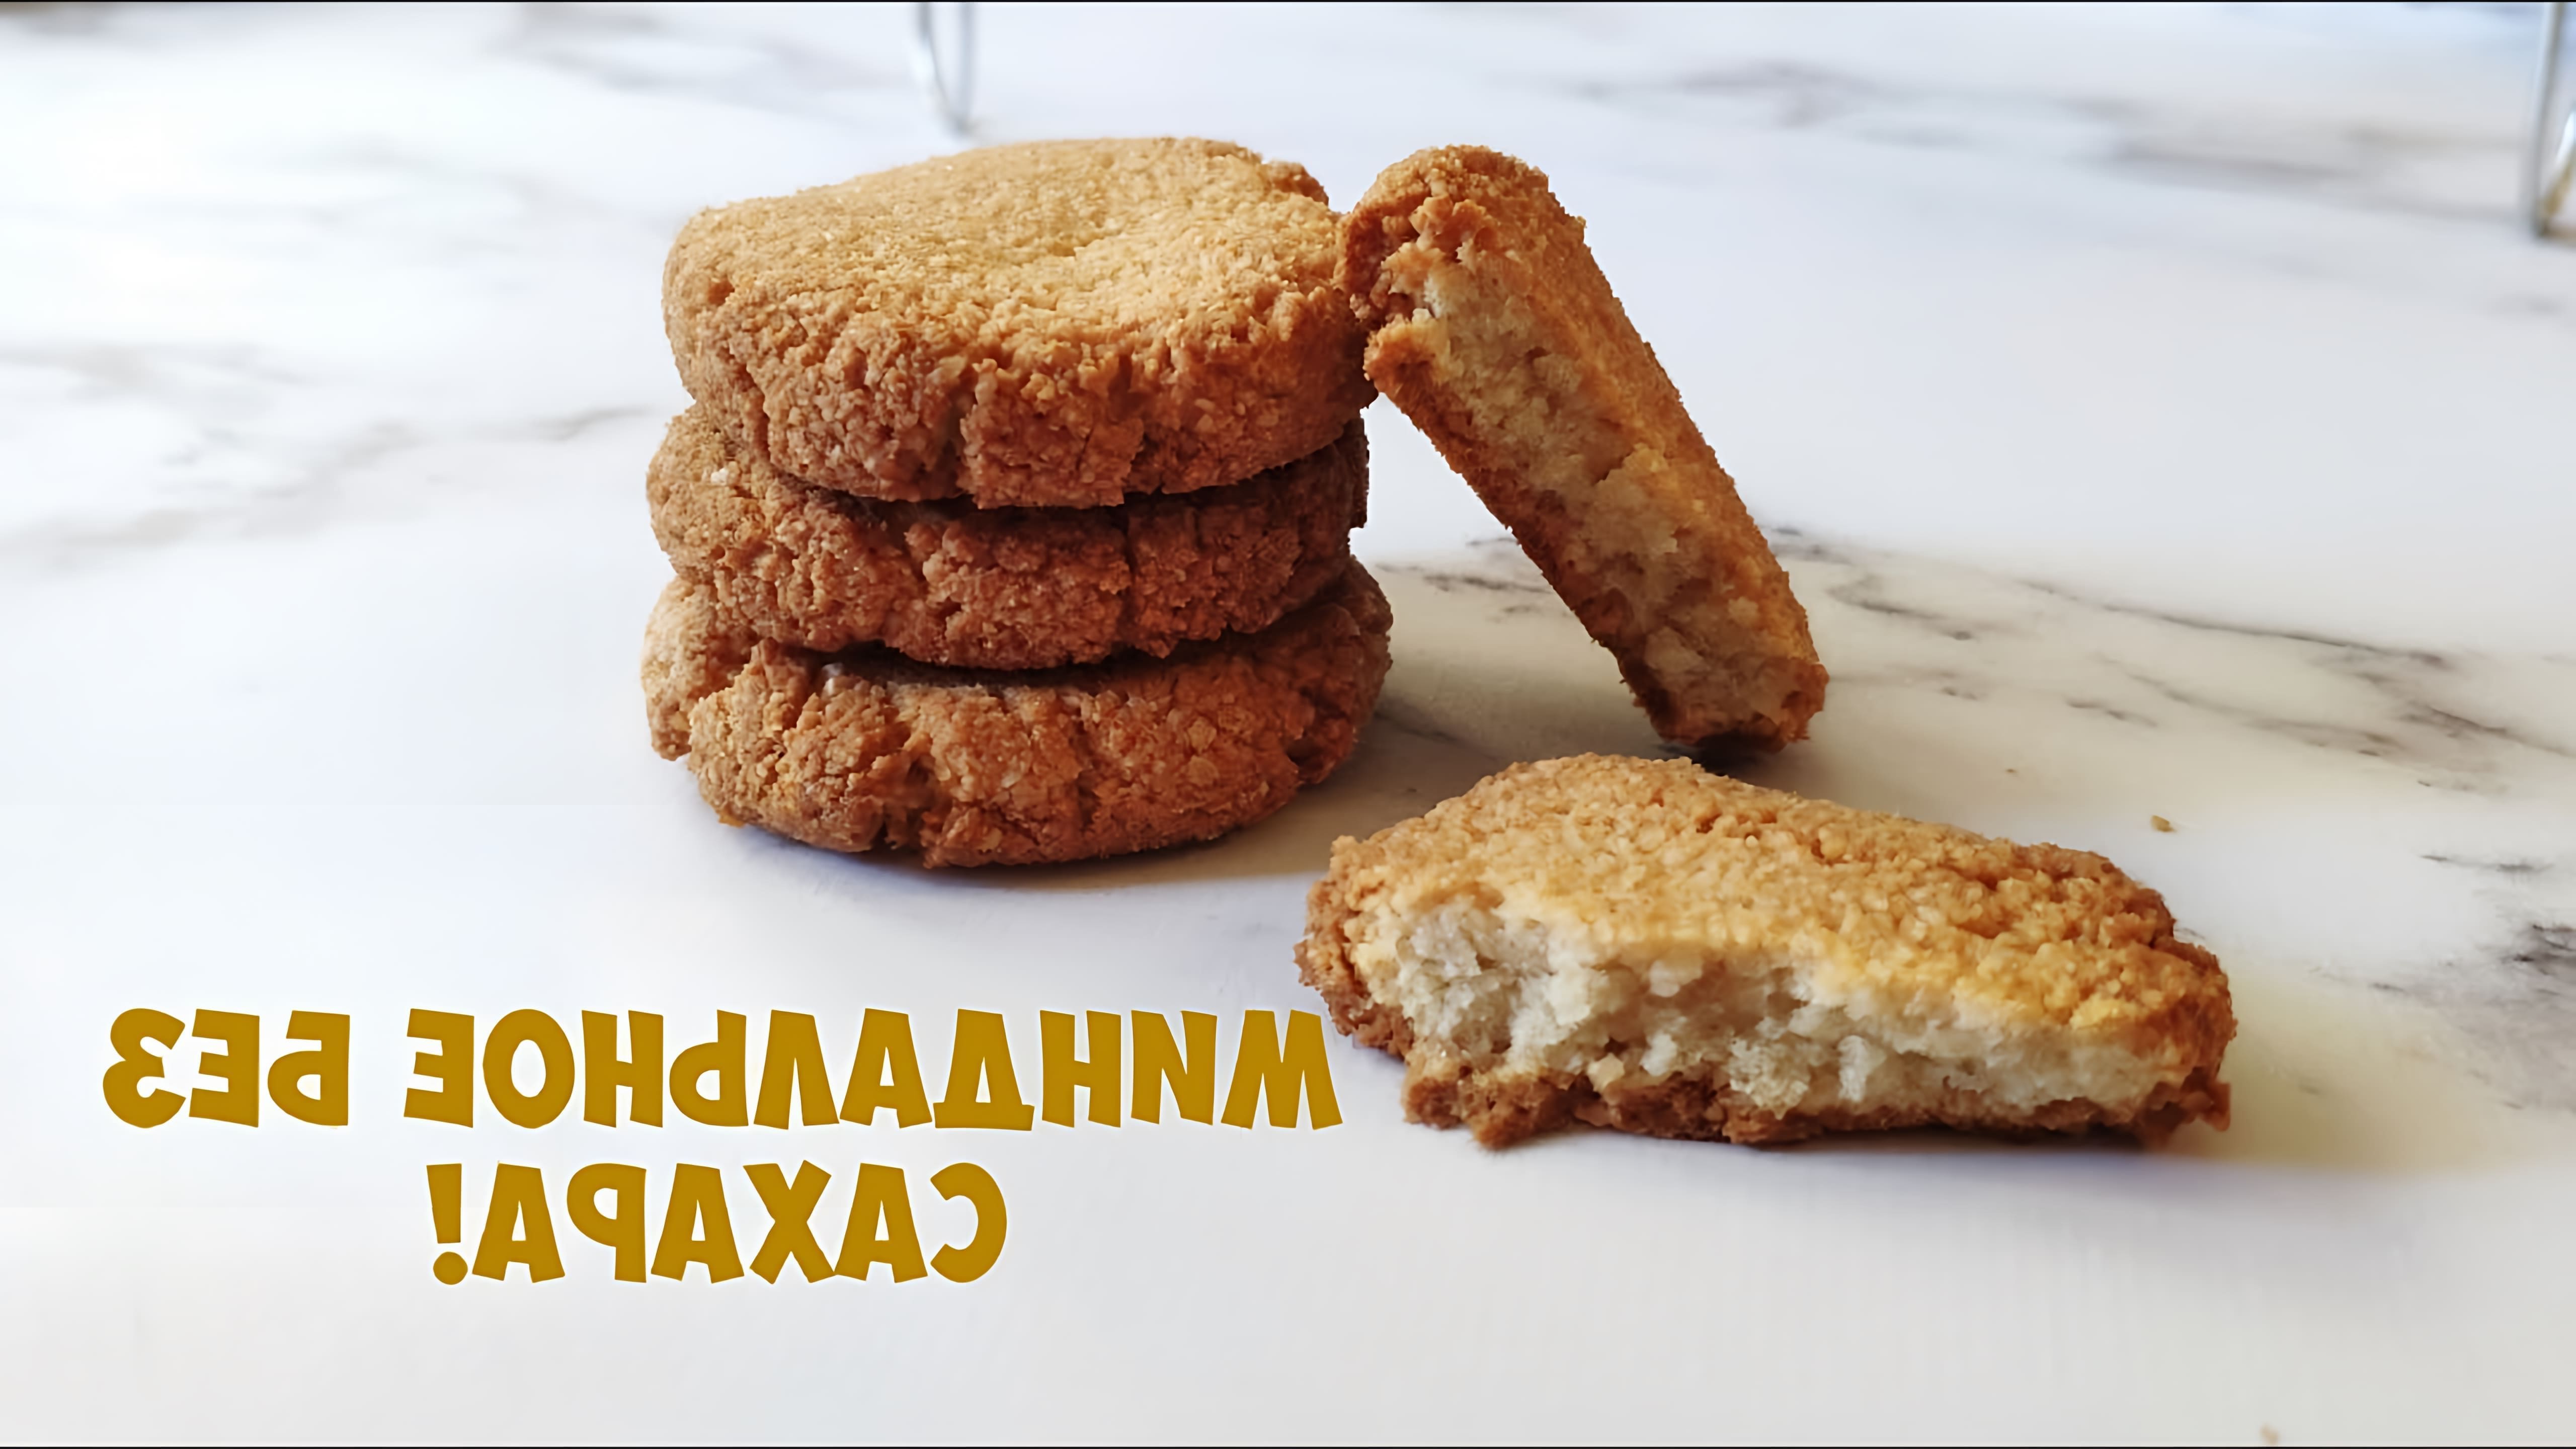 В этом видео демонстрируется рецепт приготовления миндального печенья без сахара, которое получается хрустящим и ароматным